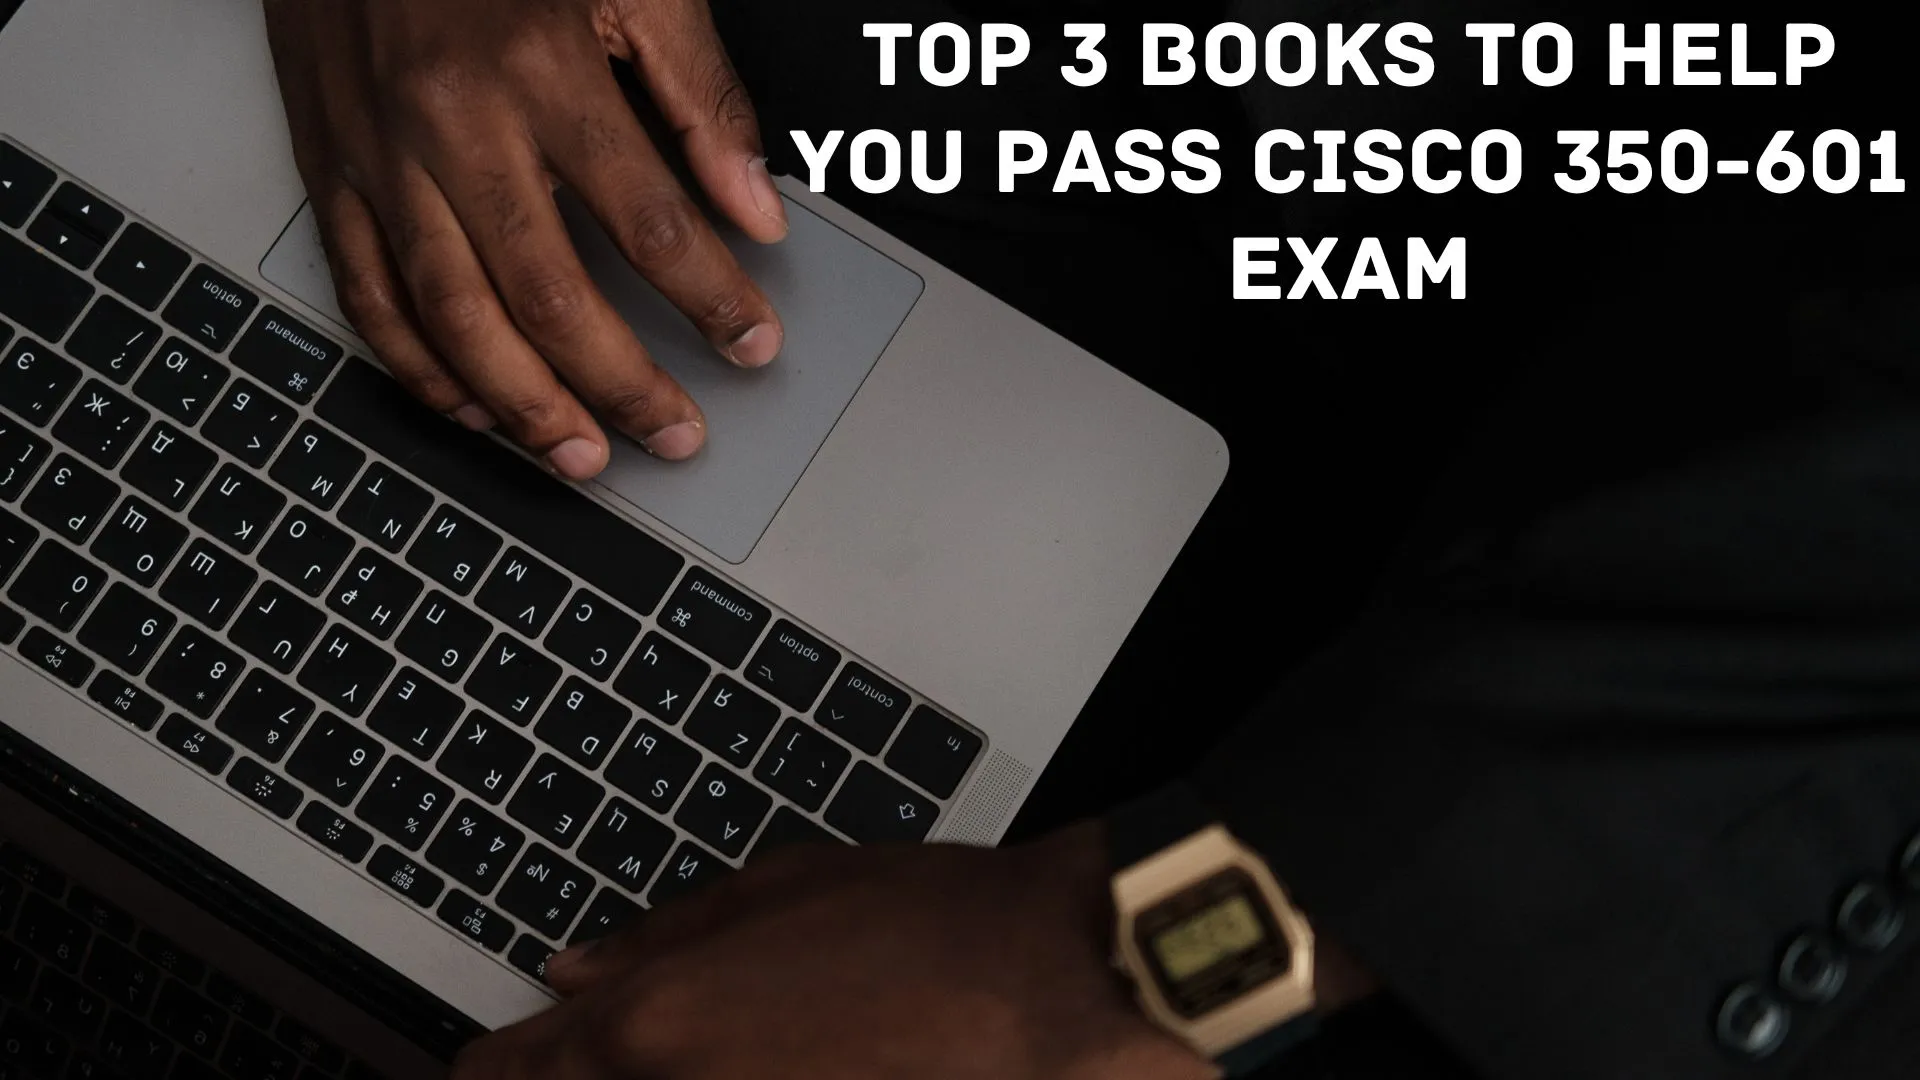 Top 3 Books to Help You Pass Cisco 350-601 Exam